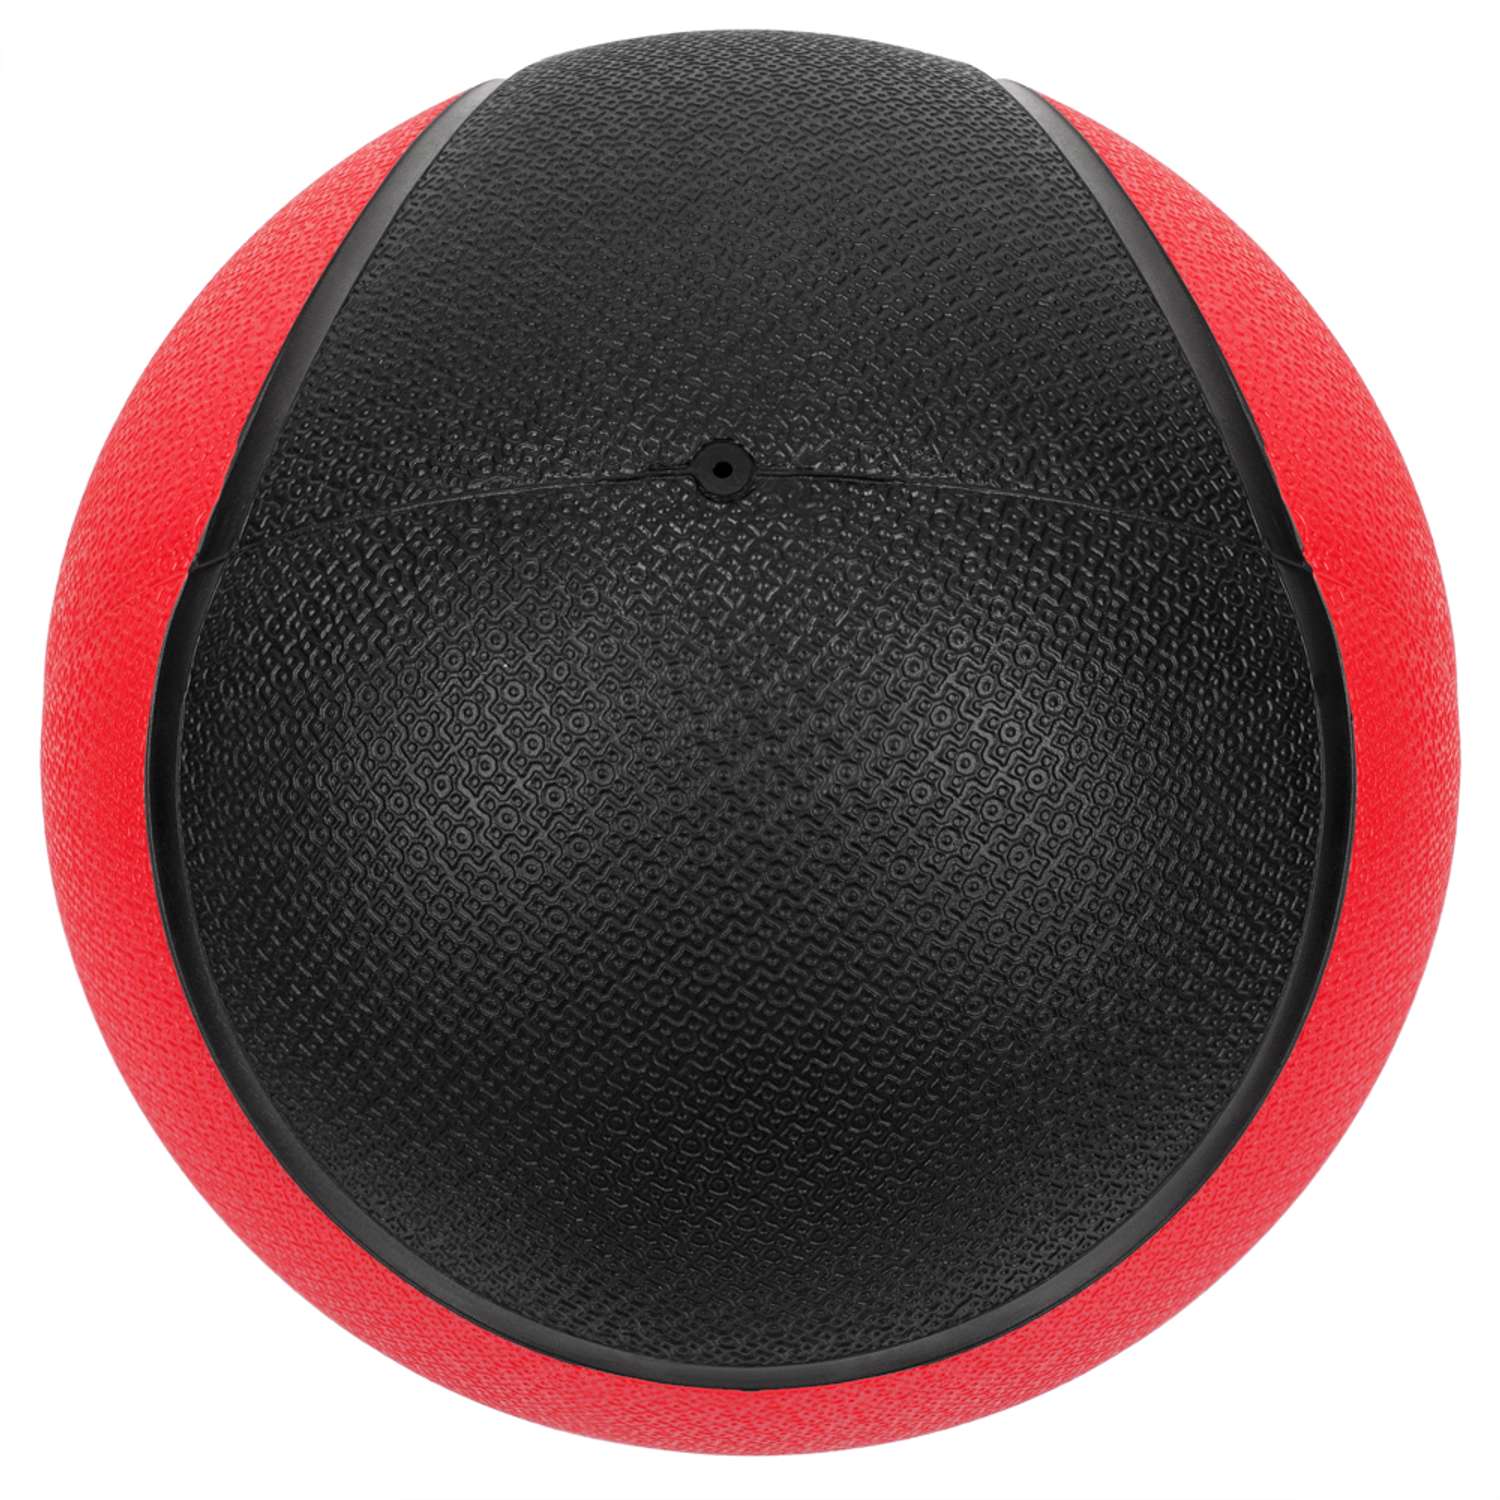 Медбол STRONG BODY медицинский мяч для фитнеса черно-красный 2 кг - фото 5